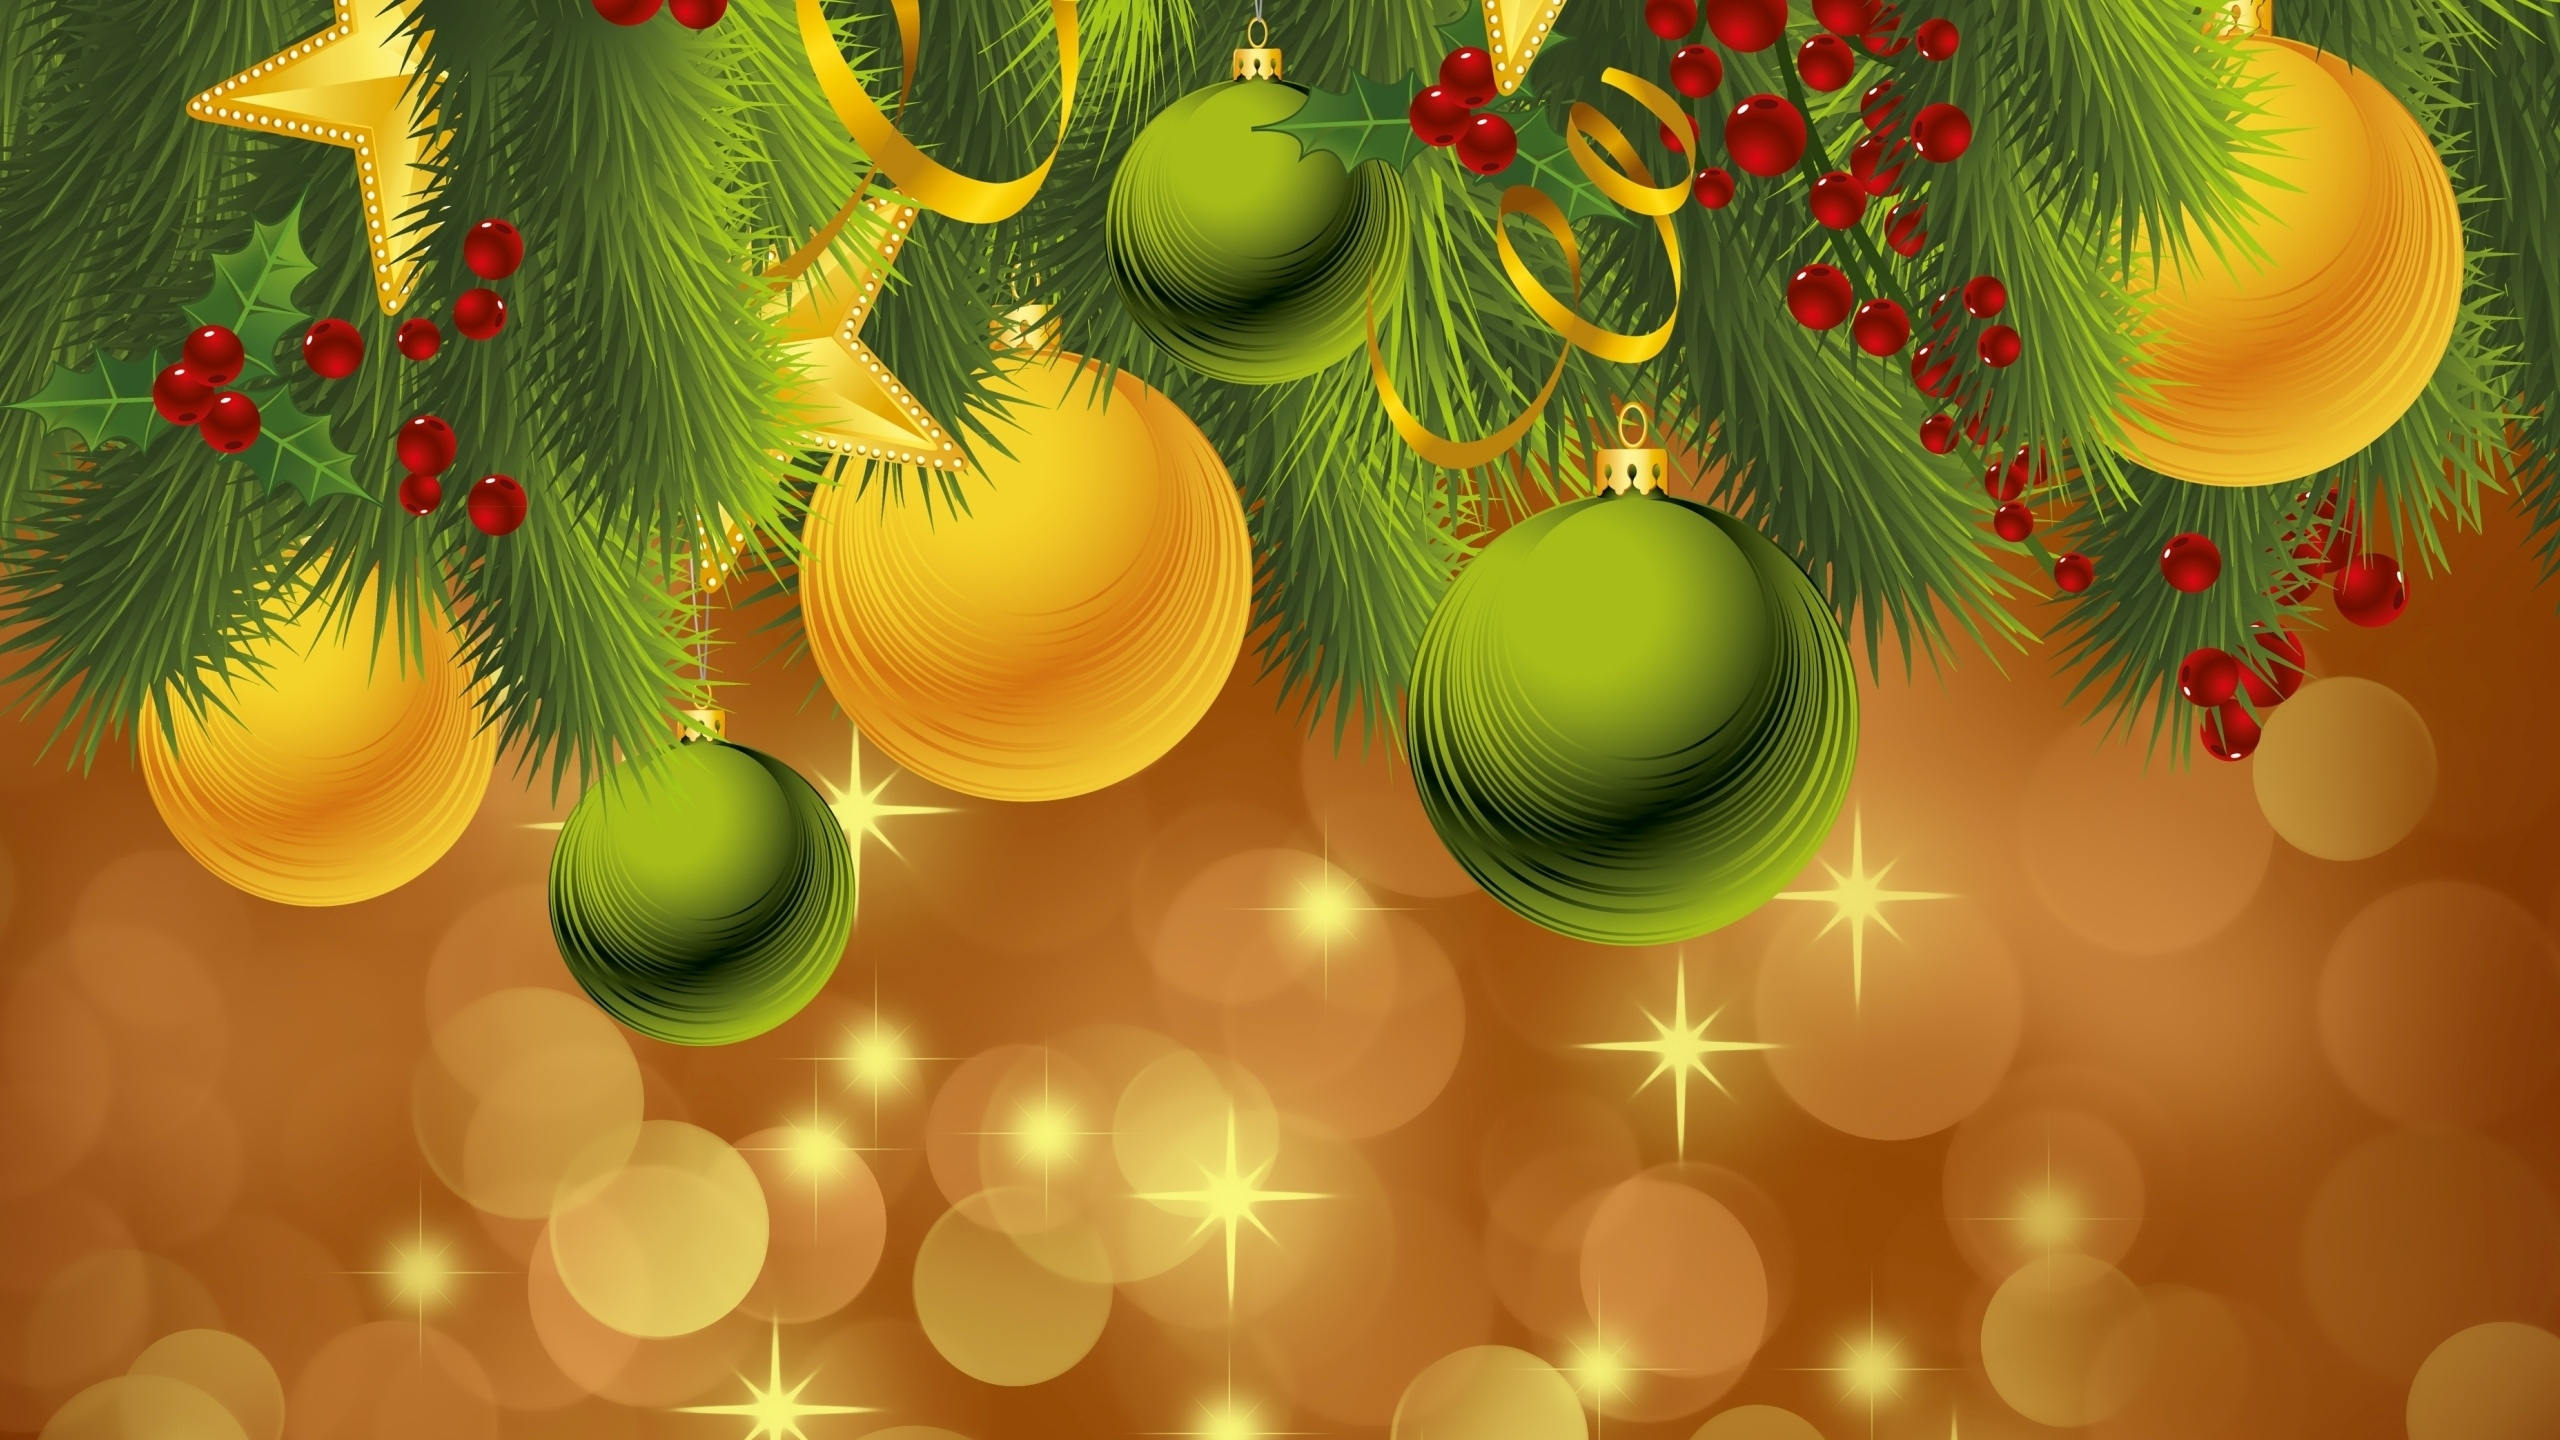 Le Jour De Noël, Nouvelle Année, Ornement de Noël, Green, Décoration de Noël. Wallpaper in 2560x1440 Resolution